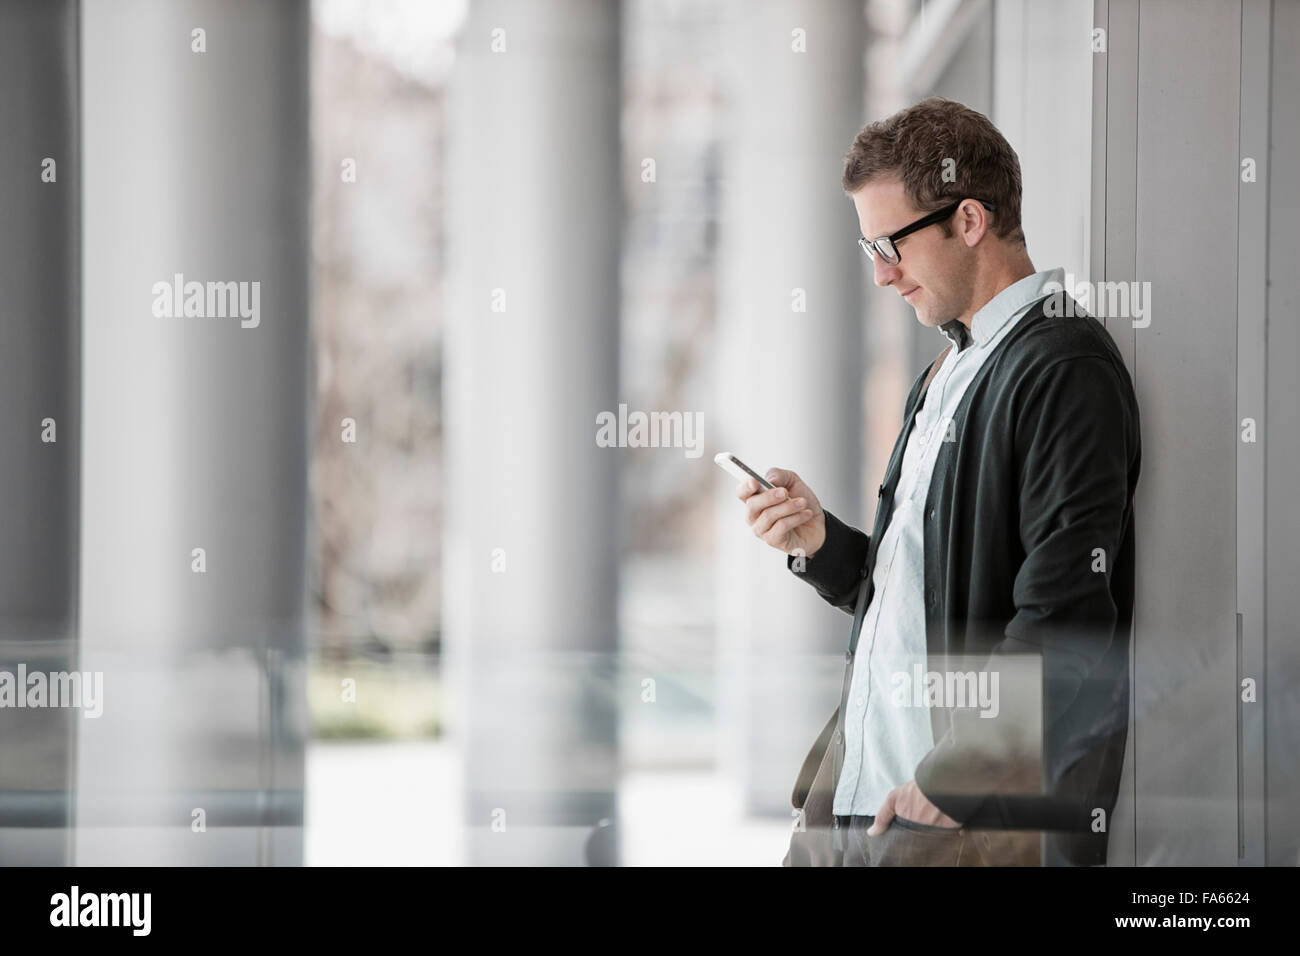 Ein Mann in Freizeitkleidung außerhalb eines Gebäudes stehen, sein Smartphone überprüfen. Stockfoto